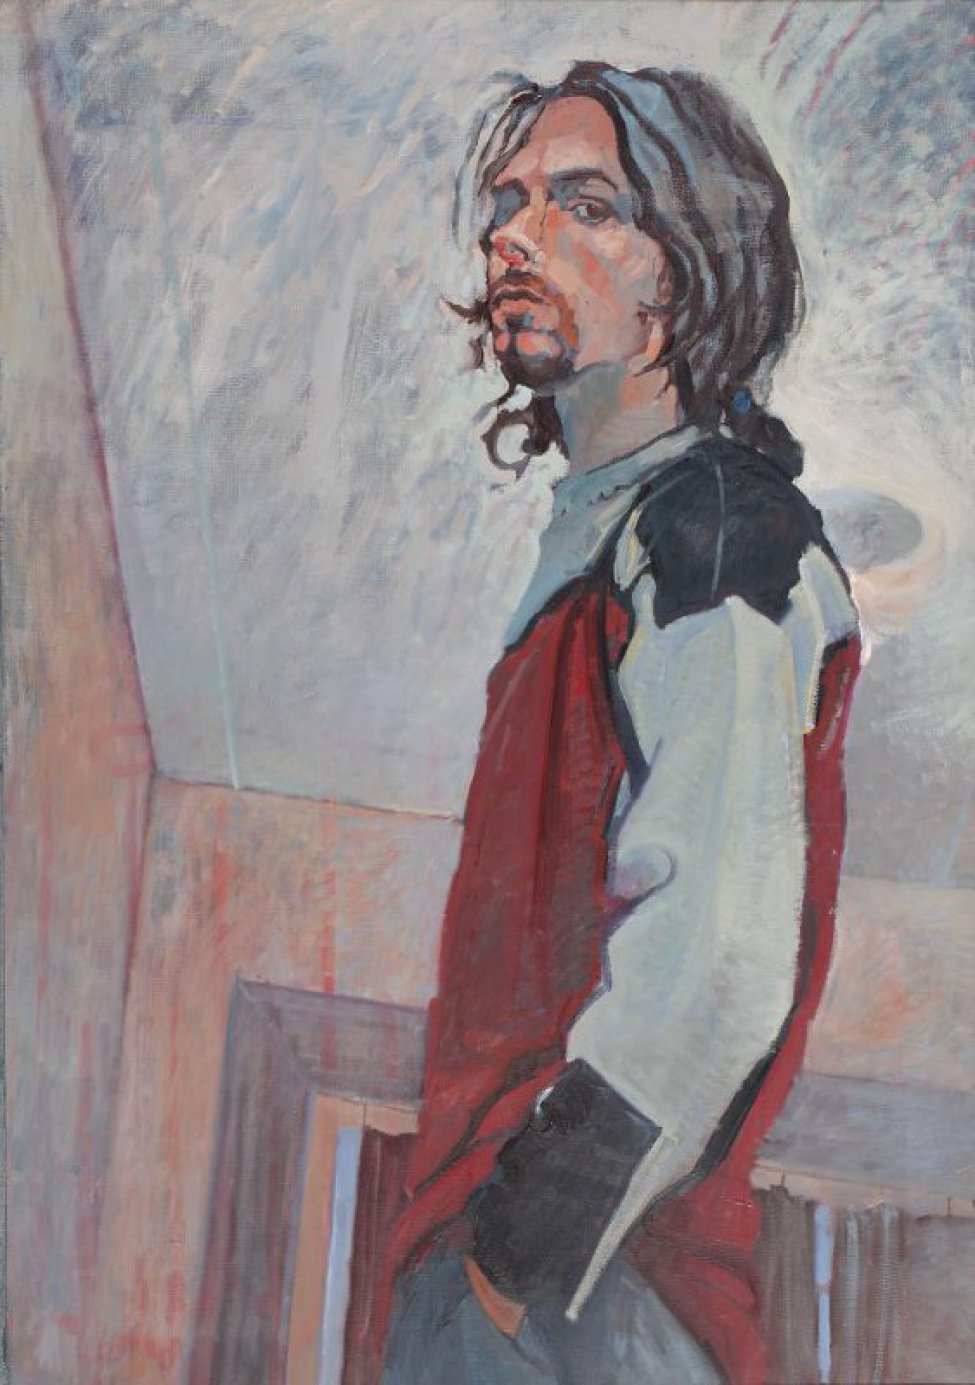 В интерьере комнаты, с зашторенным окном, с горящей на потолке лампой, дано победренное изображение молодого мужчины в 3/4 повороте влево с волосами до плеч, с бородкой и усами. Одет в свитер красного цвета.